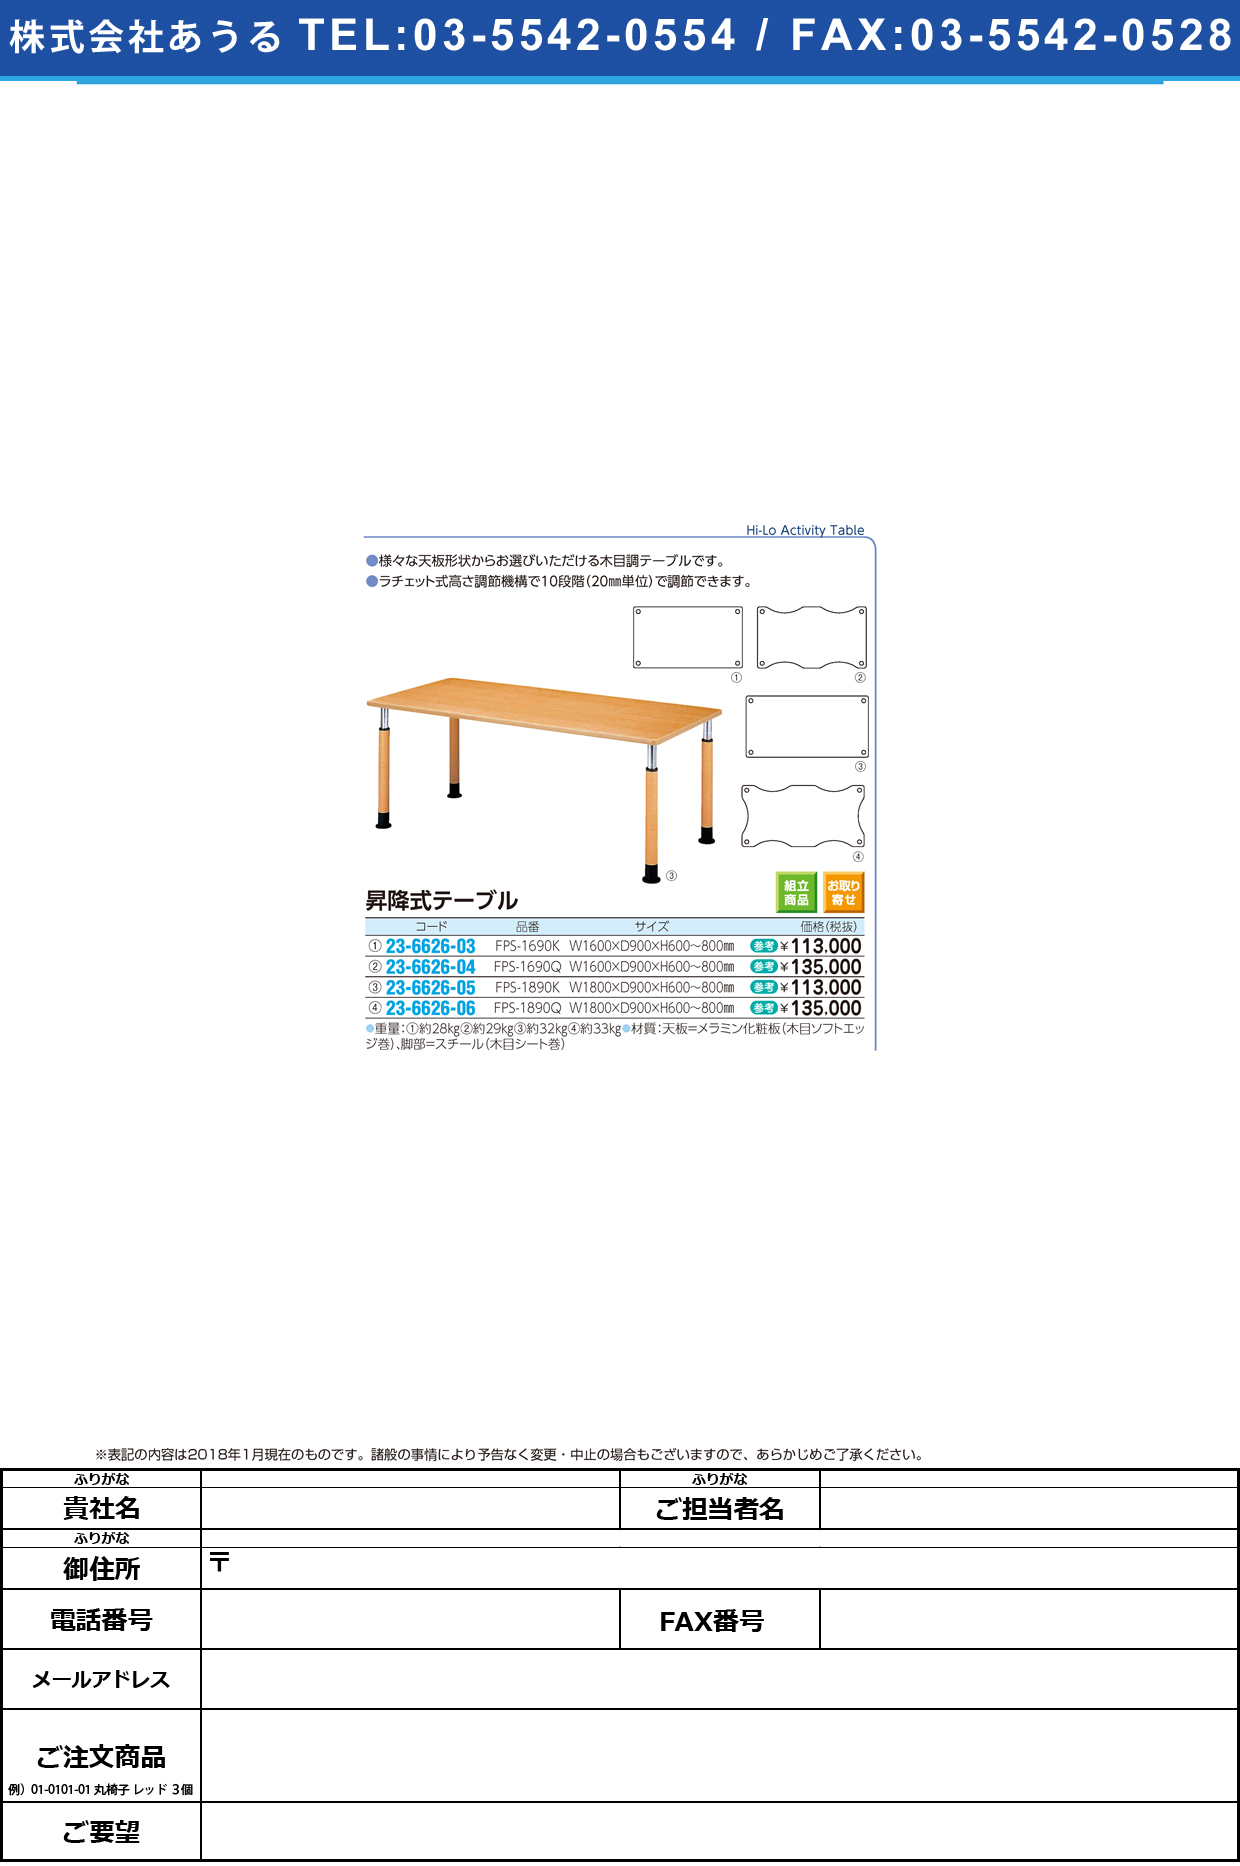 (23-6626-04)昇降式テーブル FPS-1690Q(W160XD90CM ｼｮｳｺｳｼｷﾃｰﾌﾞﾙ【1台単位】【2018年カタログ商品】